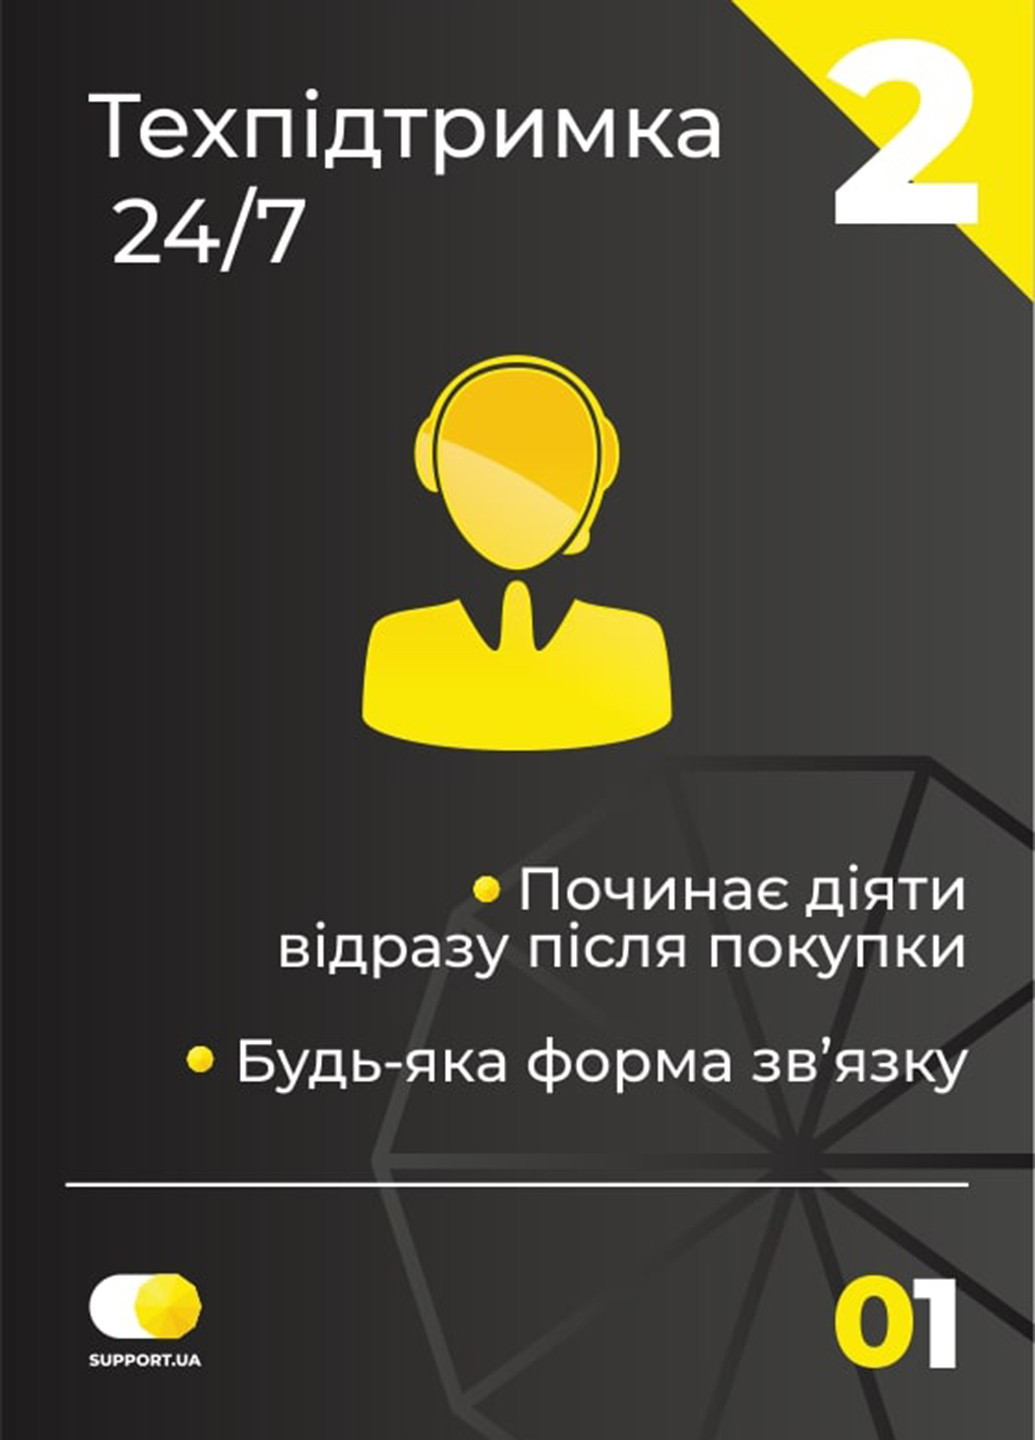 Сервис "Ooops! разбил, залил"(10001-15000), Электронный сертификат от Support.ua